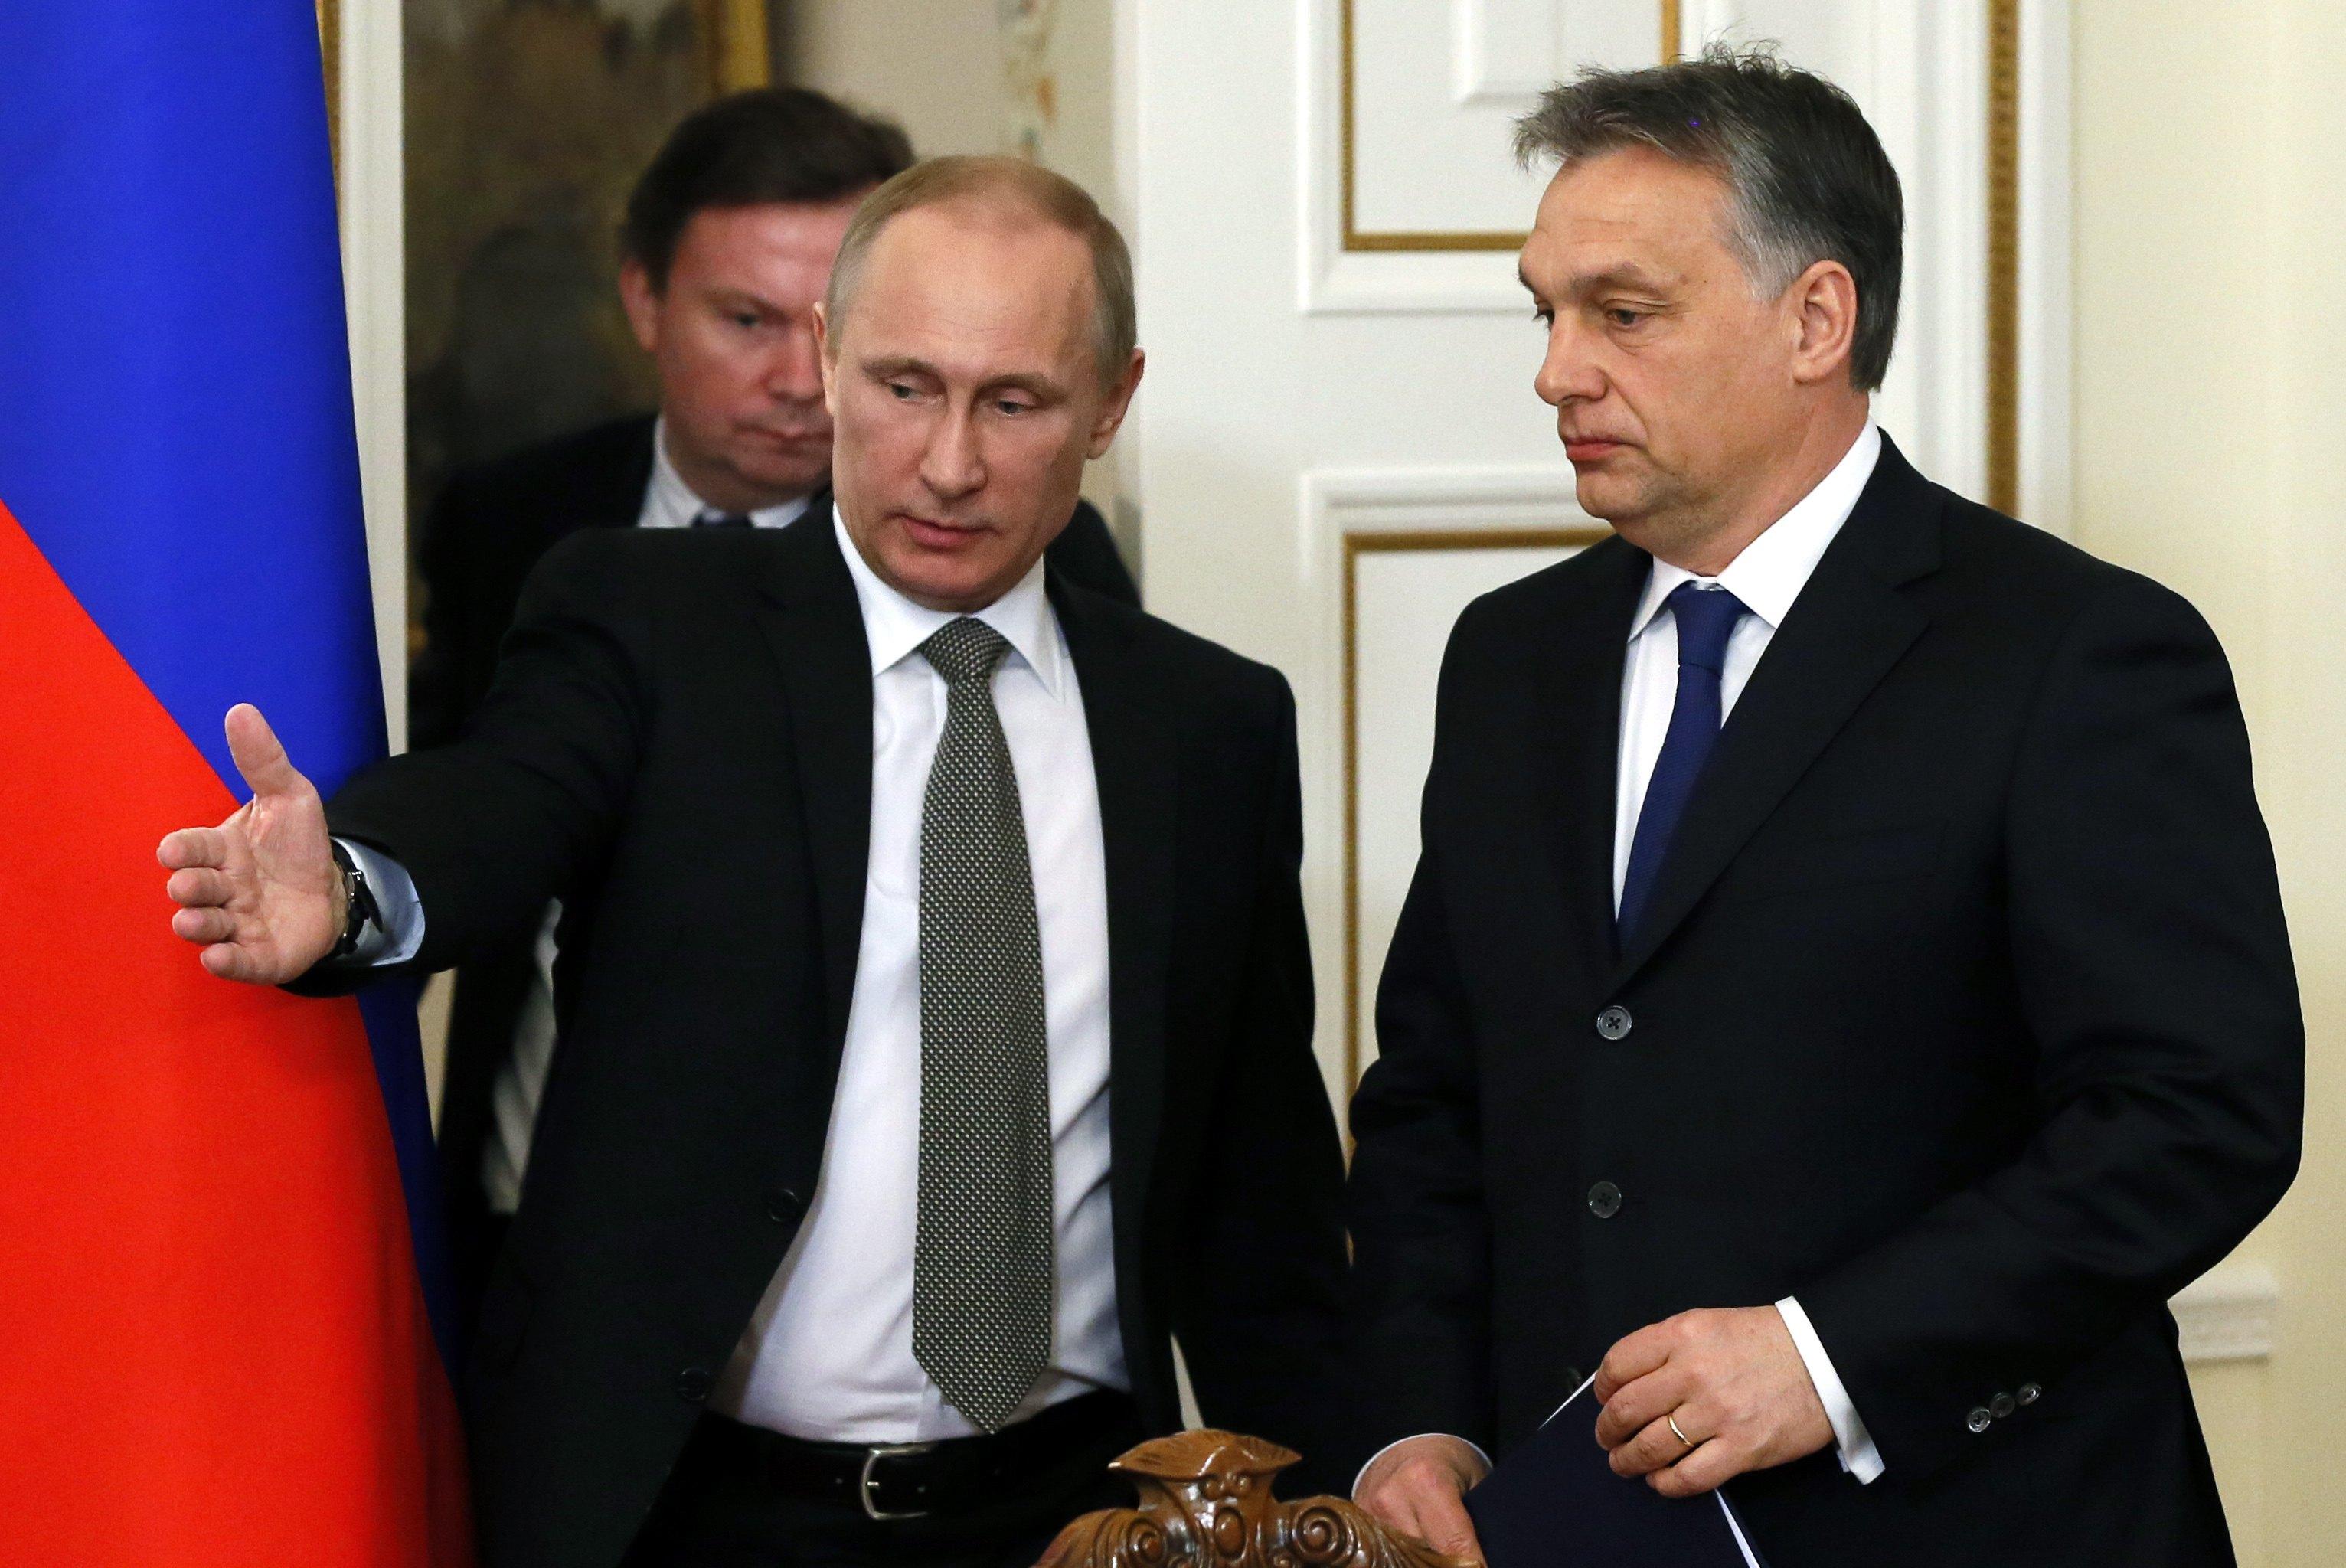 Putyin és Orbán 2014-es randevúja - erre tessék